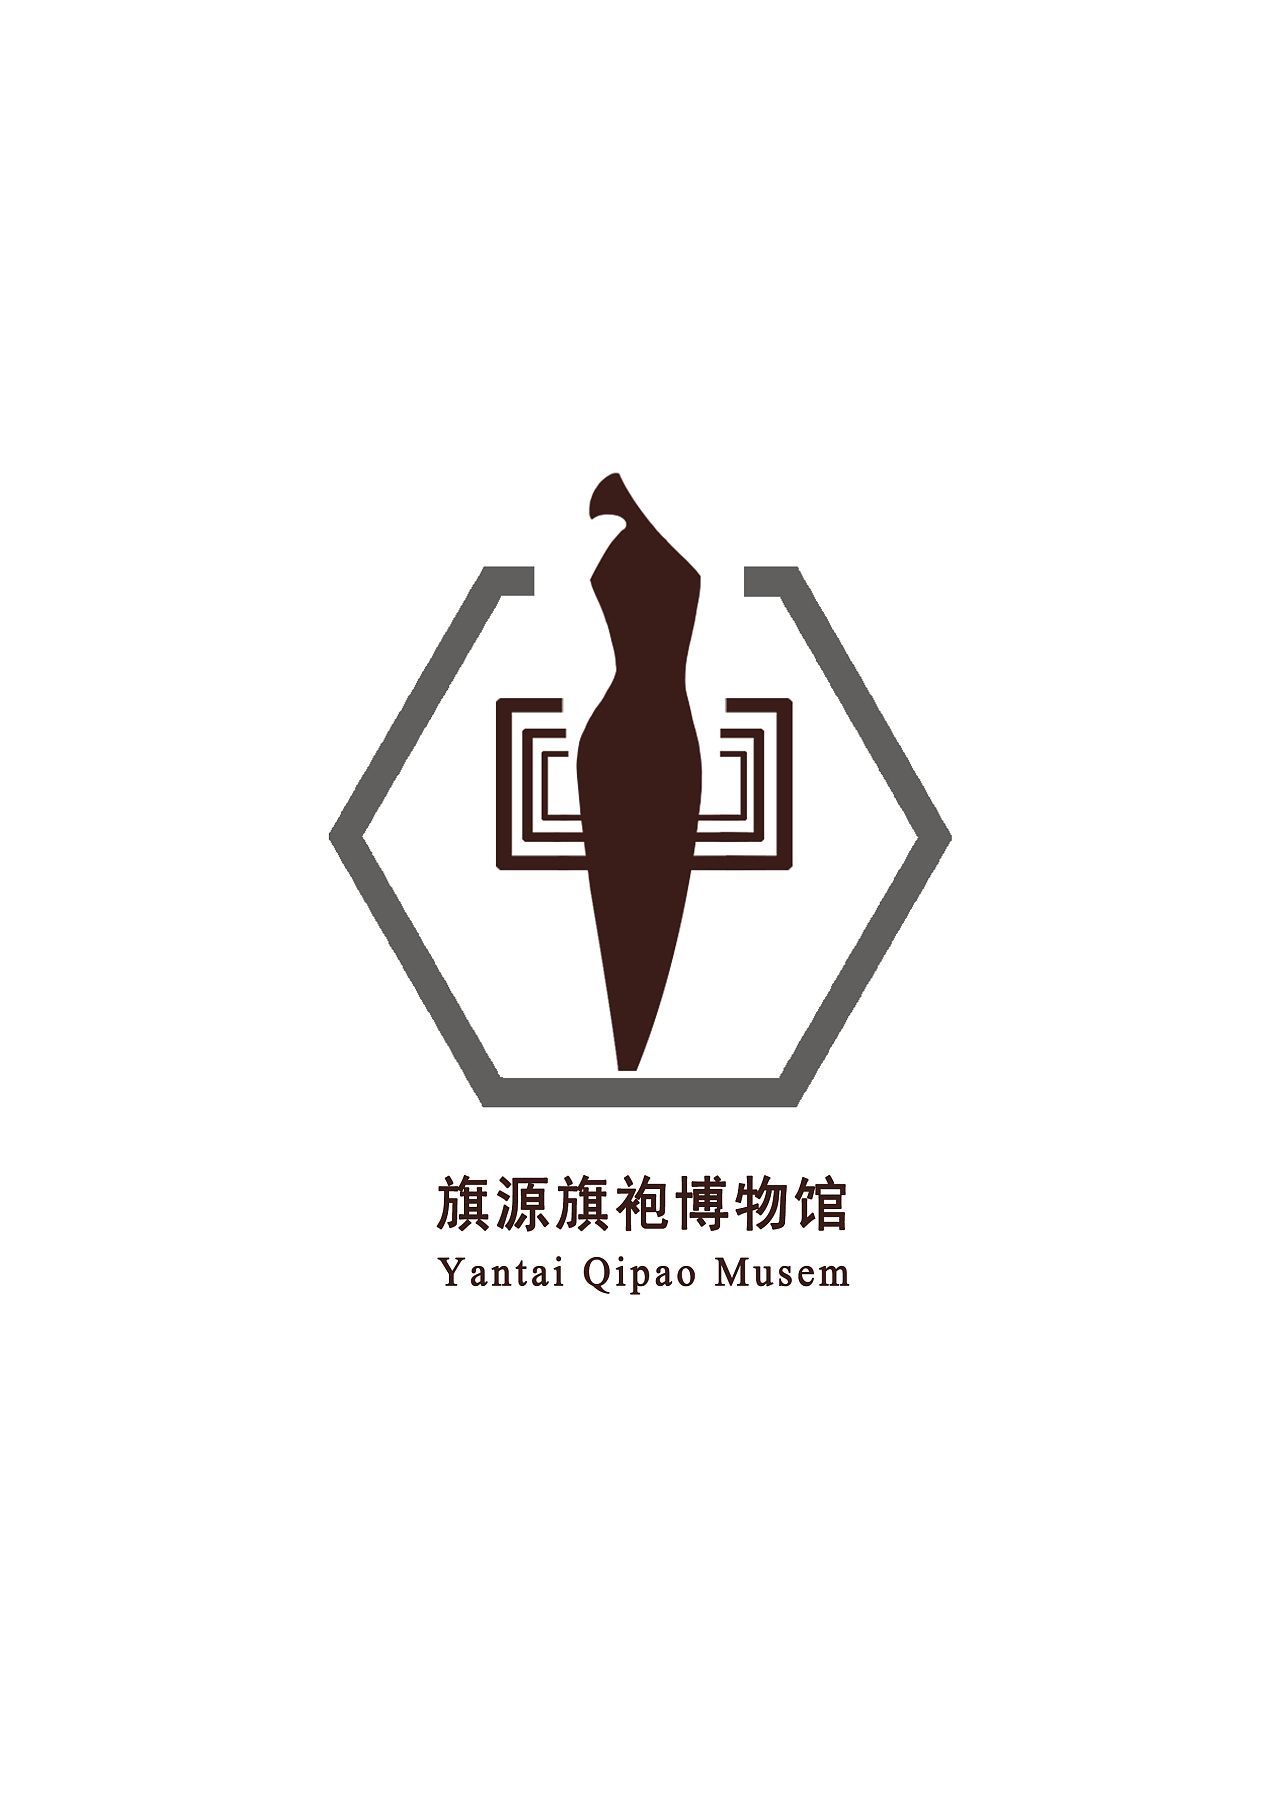 旗袍logo素材图片